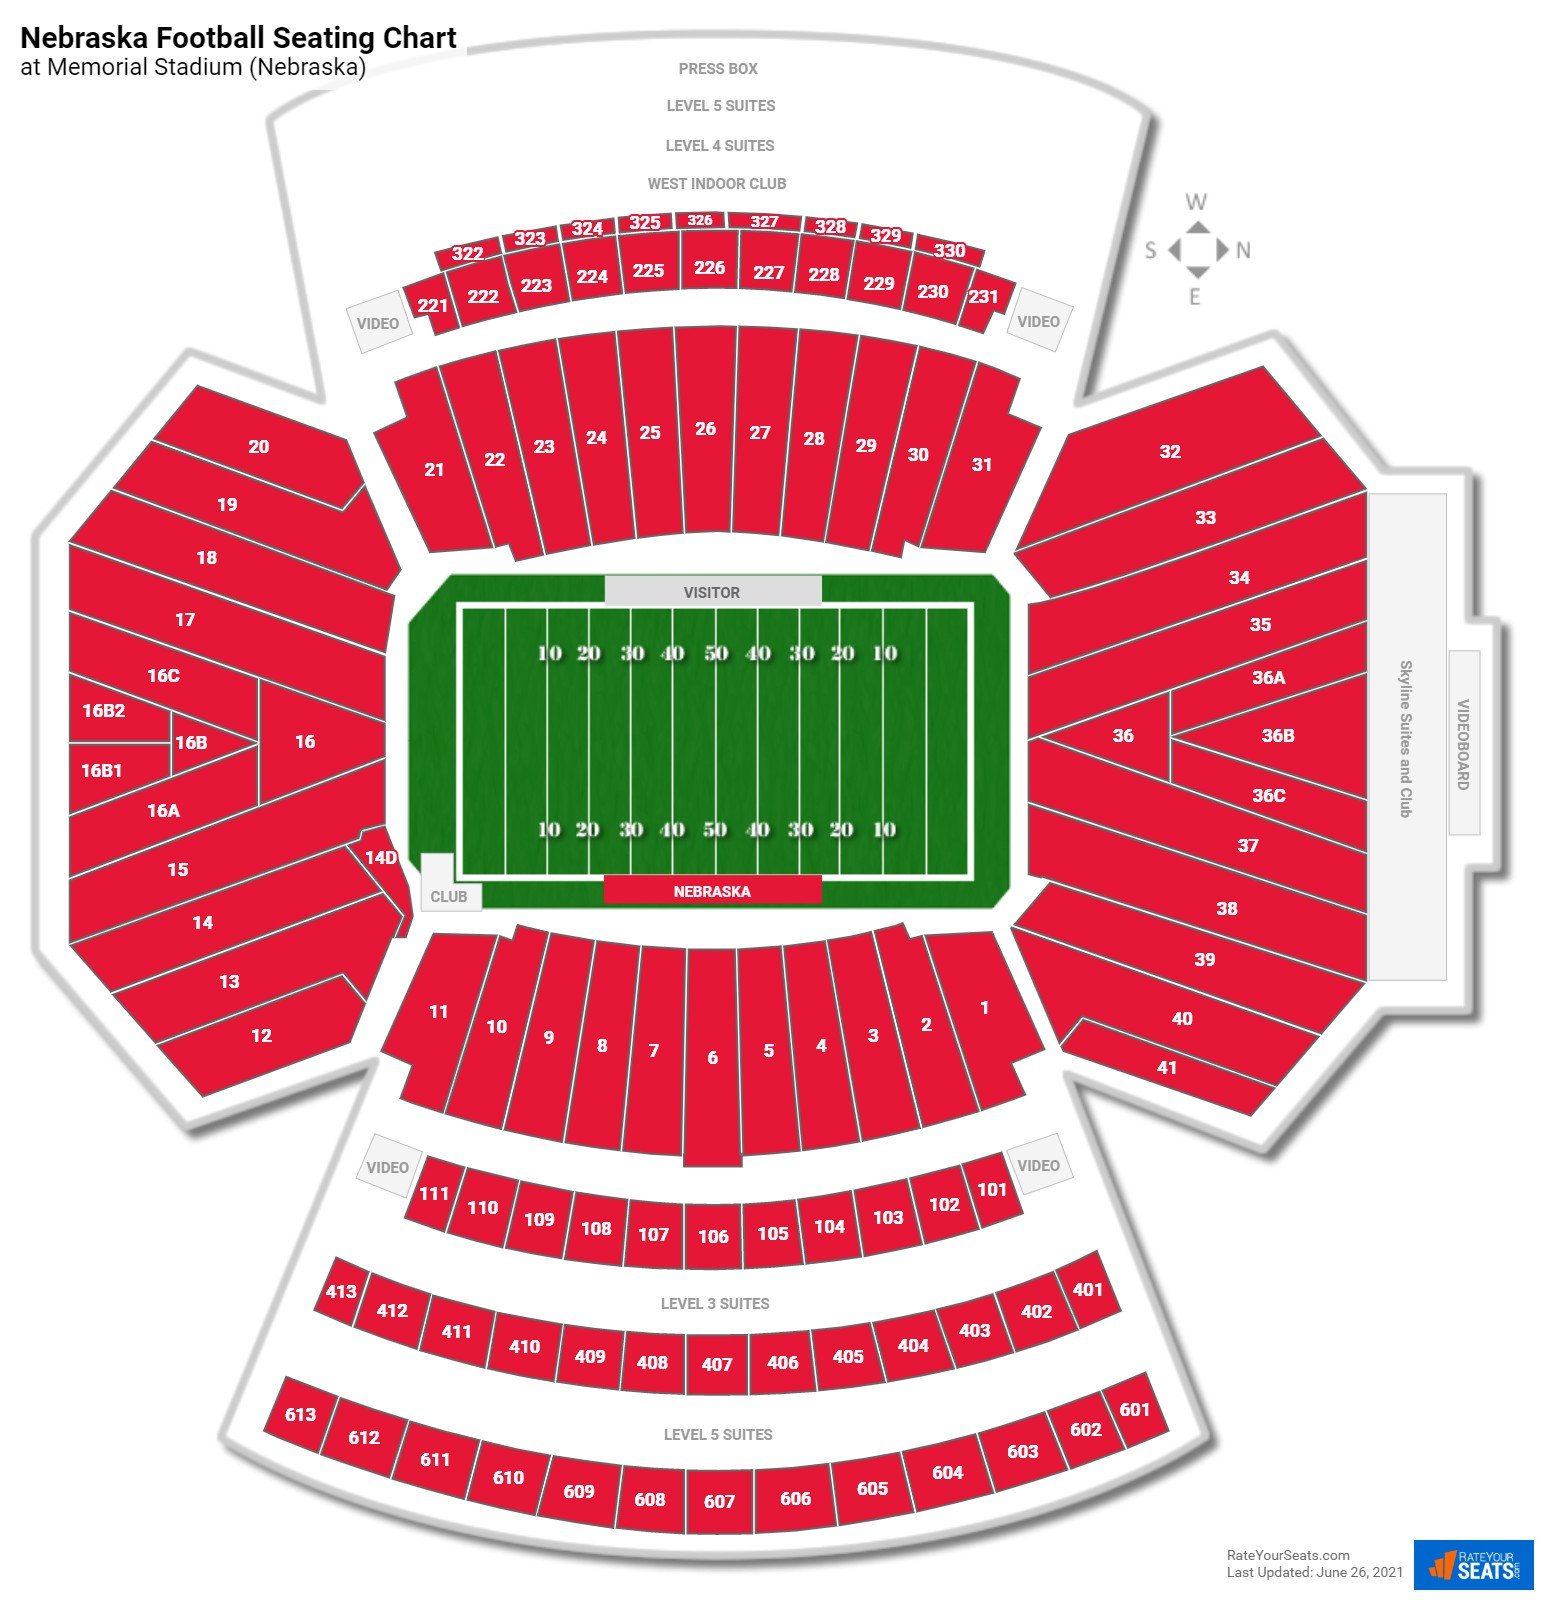 Memorial Stadium Seating Chart - RateYourSeats.com